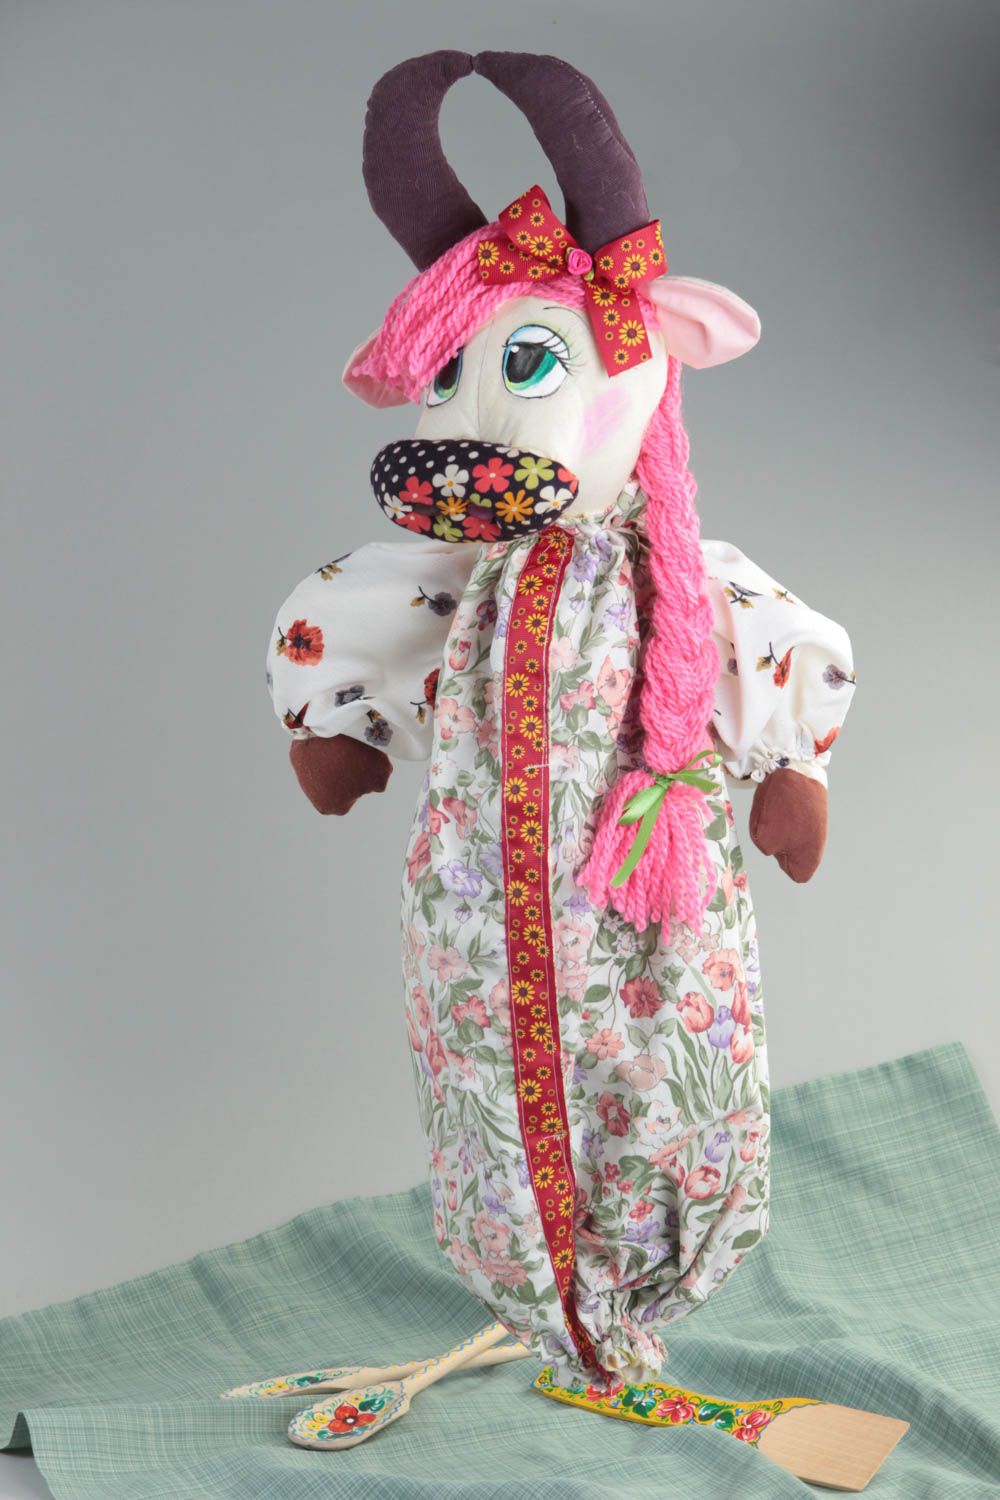 Textil Spielzeug handmade Geburtstag Geschenk Spielzeug aus Stoff Kuschel Tier foto 1